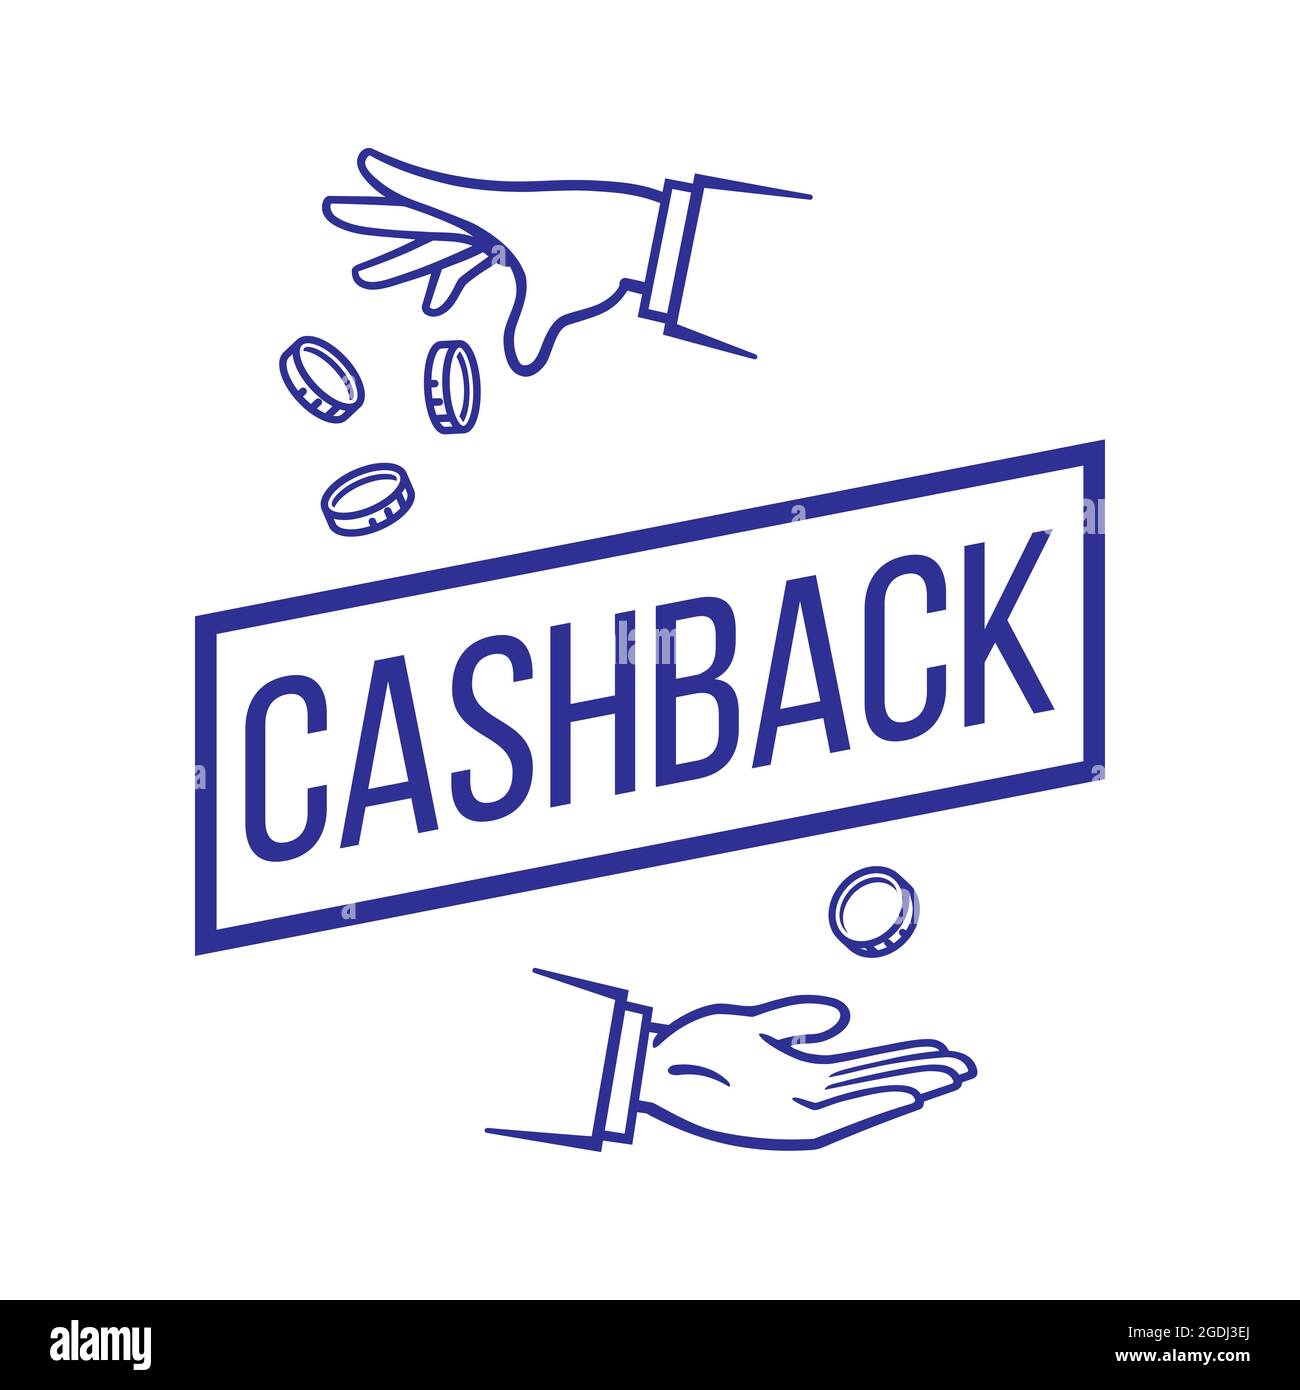 Cashback-Konzept. Geldrückerstattung. Geld sparen. Vektorgrafik, isoliert auf weißem Hintergrund Stock Vektor